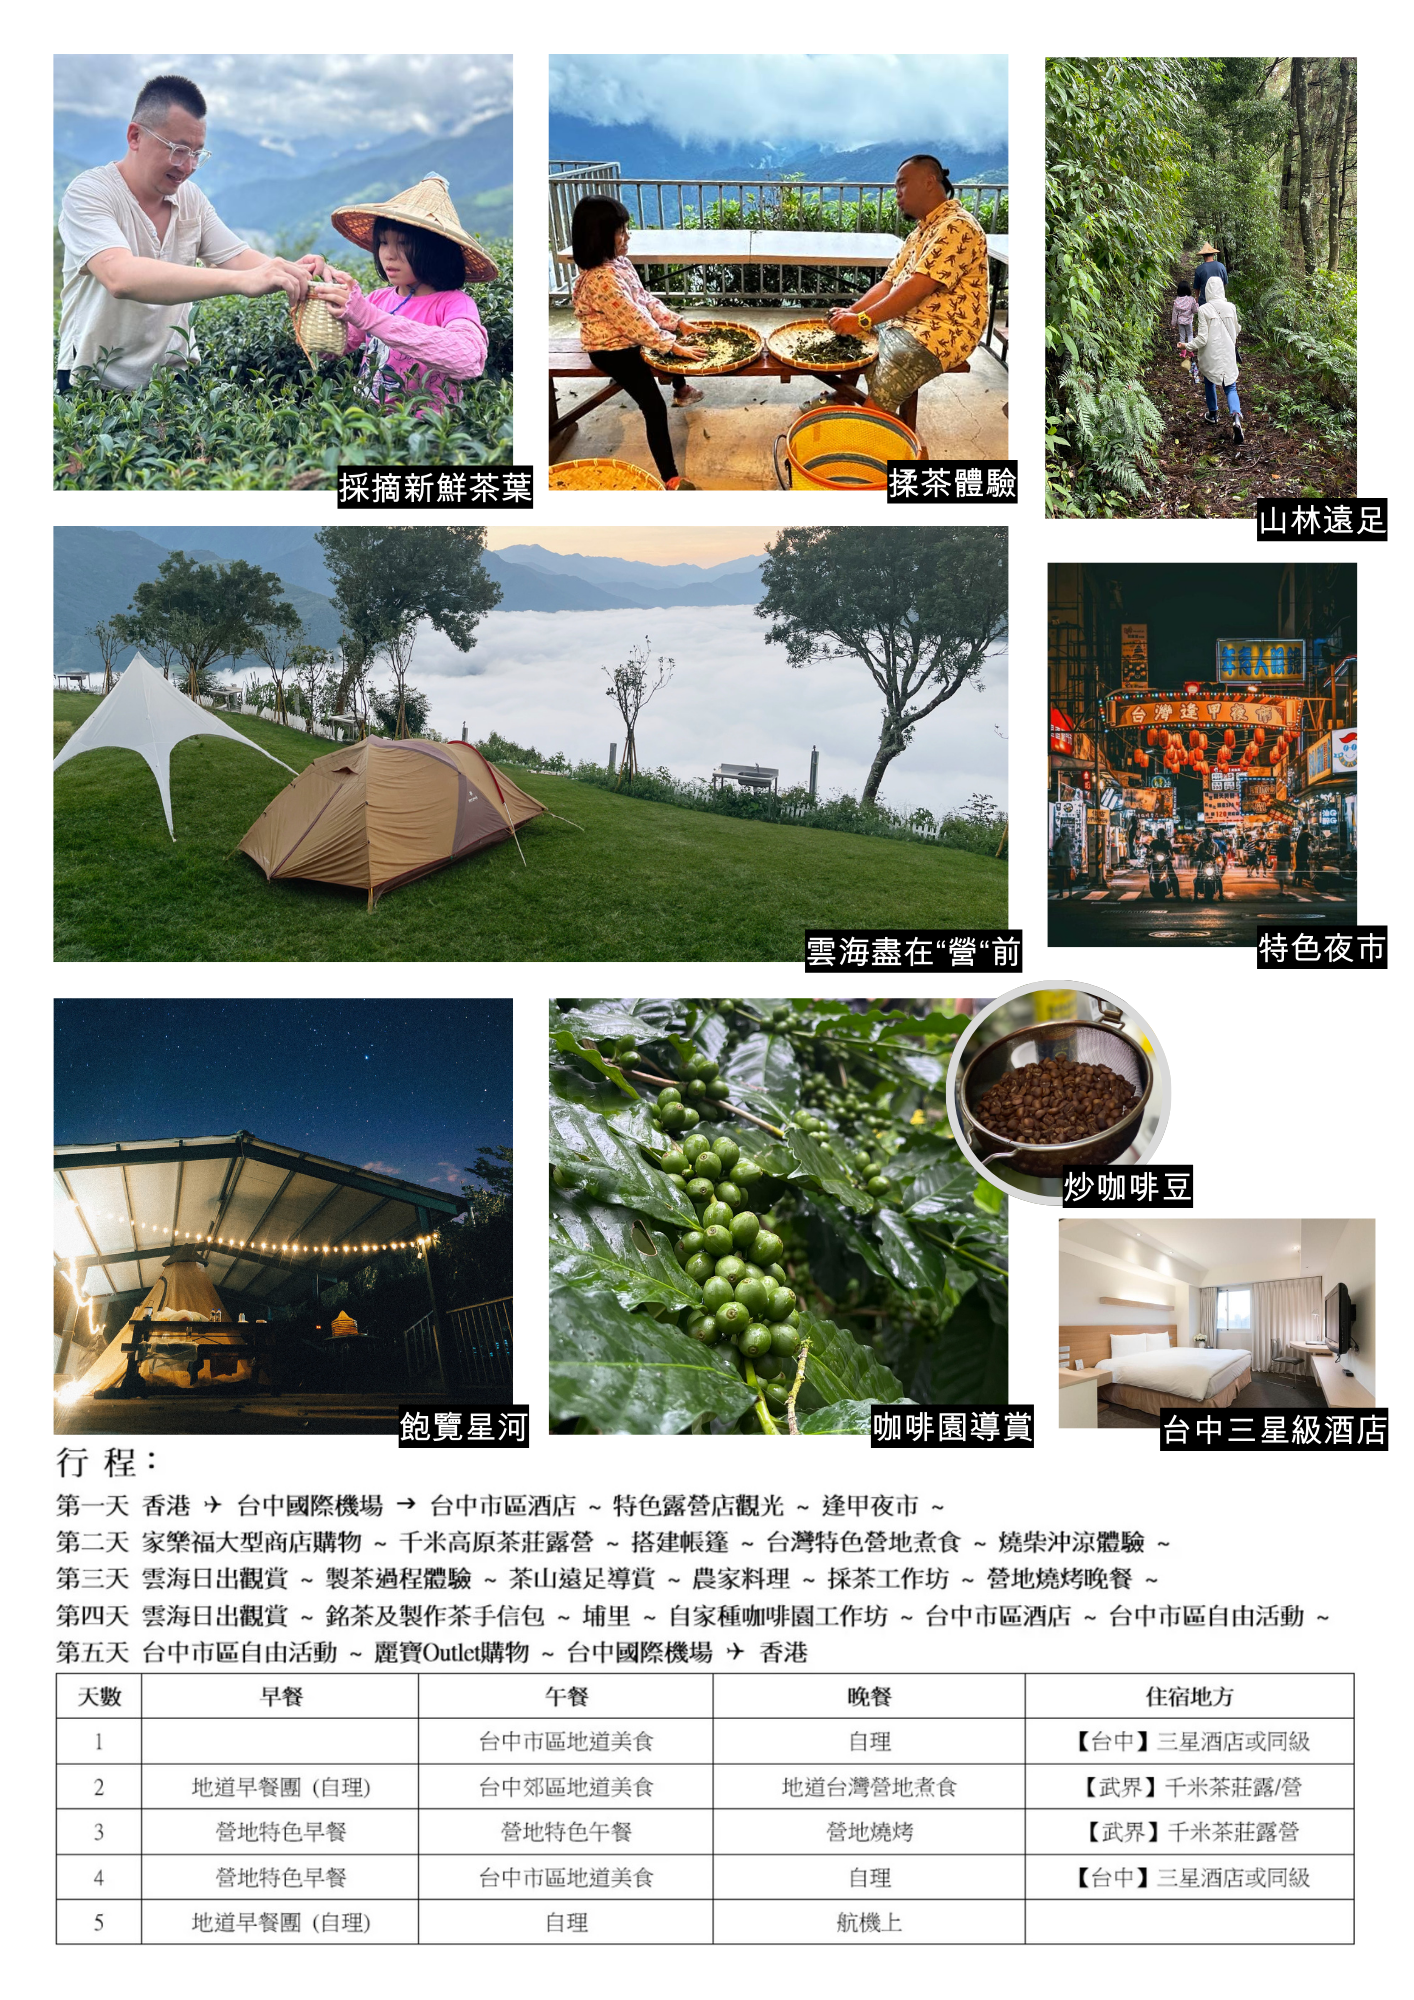 【旅行團】台中雲海露營採茶體驗5天休閒美景之旅（不含來回機票）